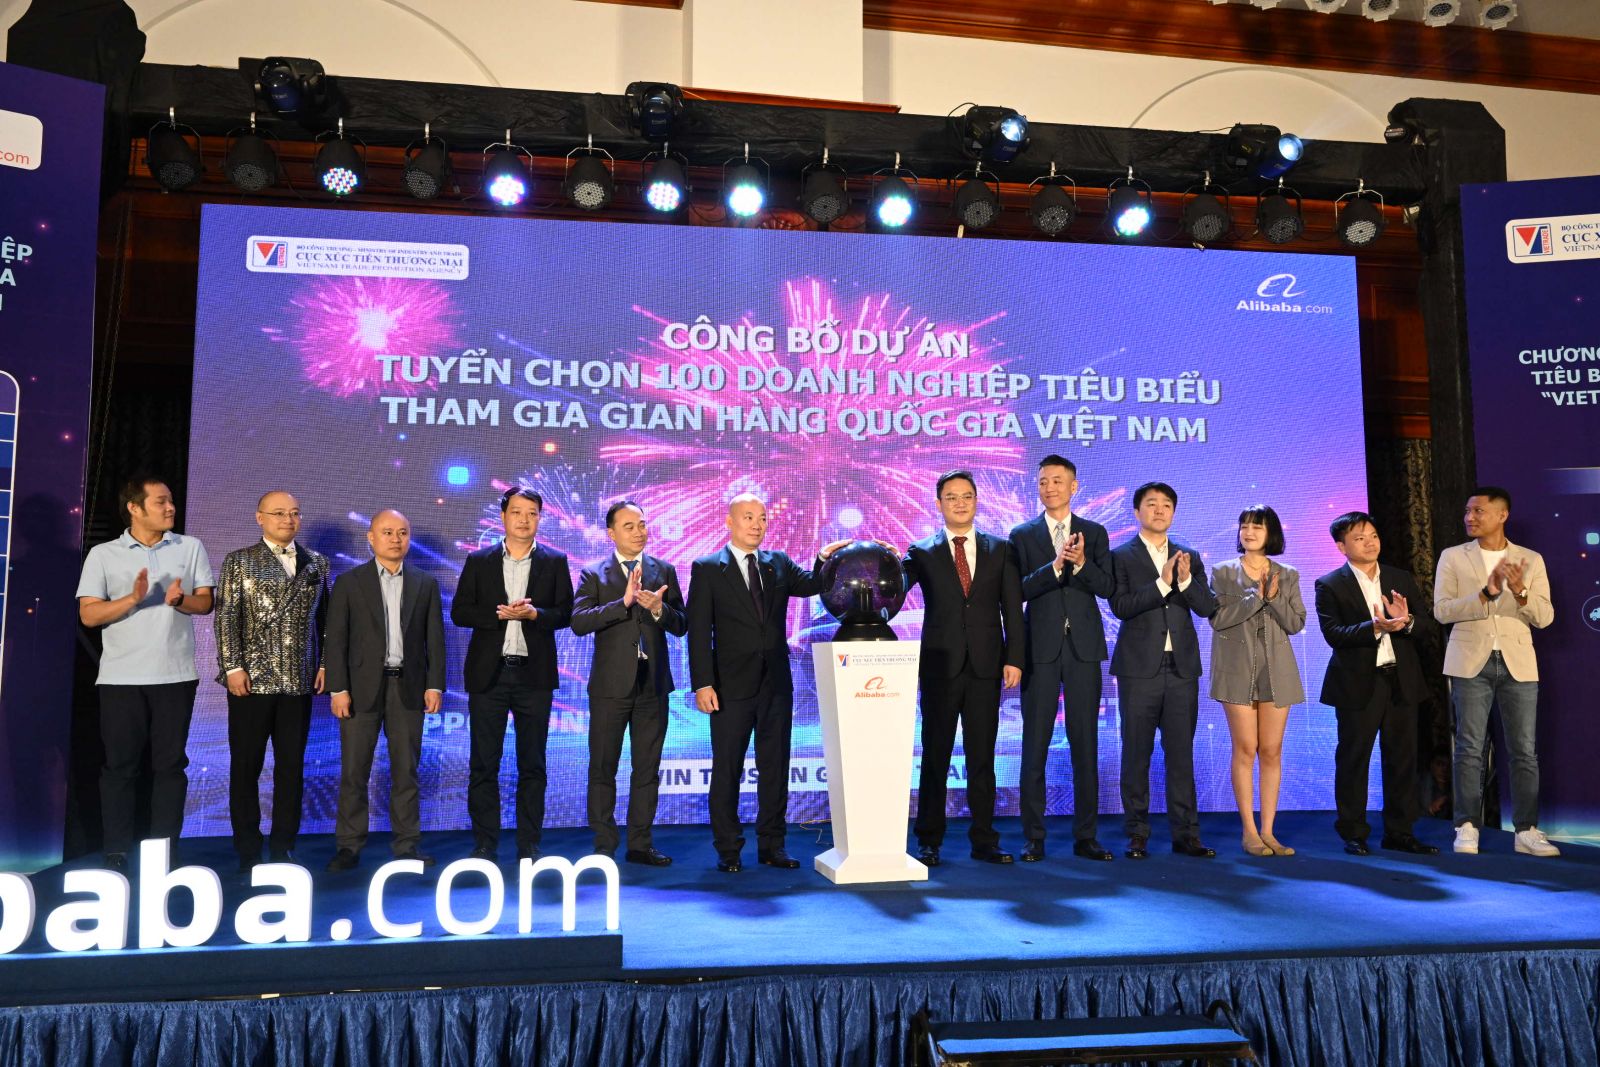 Các doanh nghiệp tiêu biểu được lựa chọn tham gia Gian hàng quốc gia Việt Nam trên Alibaba.com